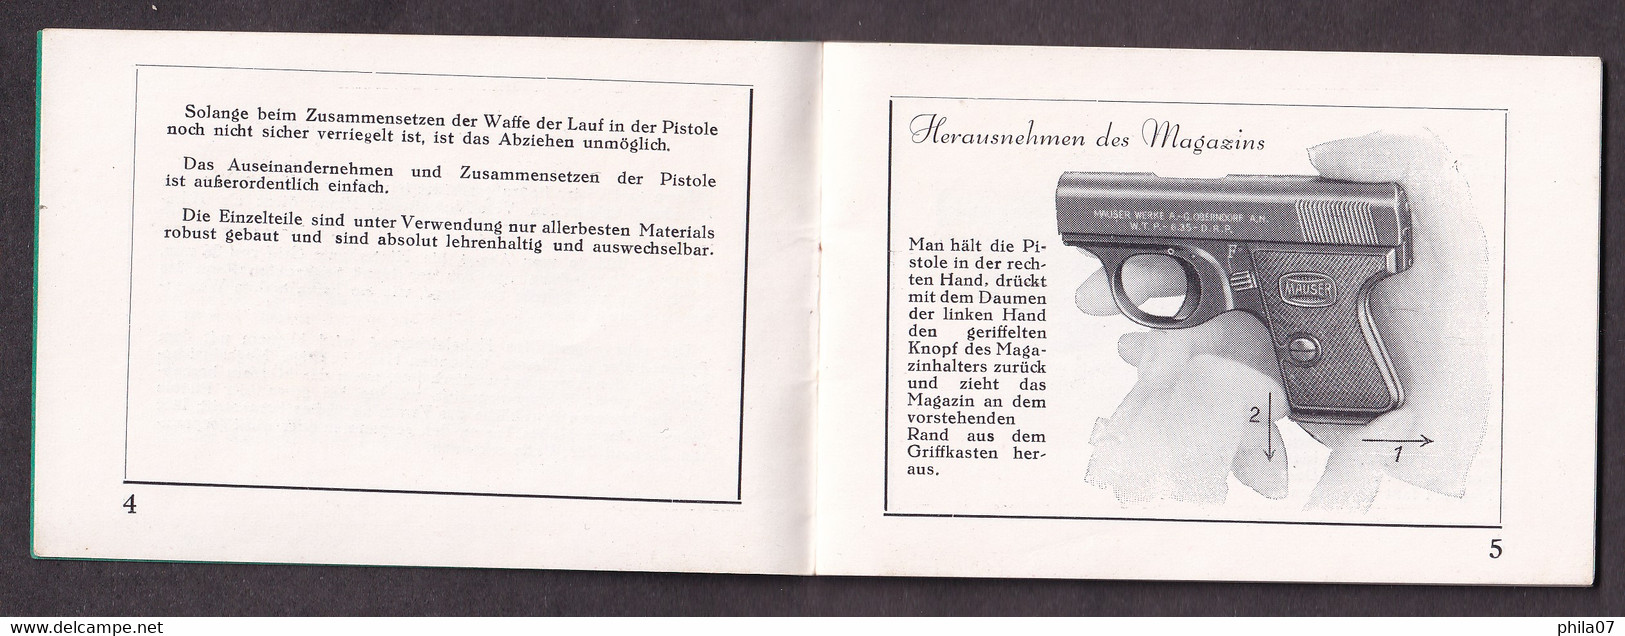 Mauser Westentaschen=pistolen, Modell WTP II. Kal. 6.35 Mm, Mauser Werke A.-G. Oberndorf A.N. - Autres & Non Classés